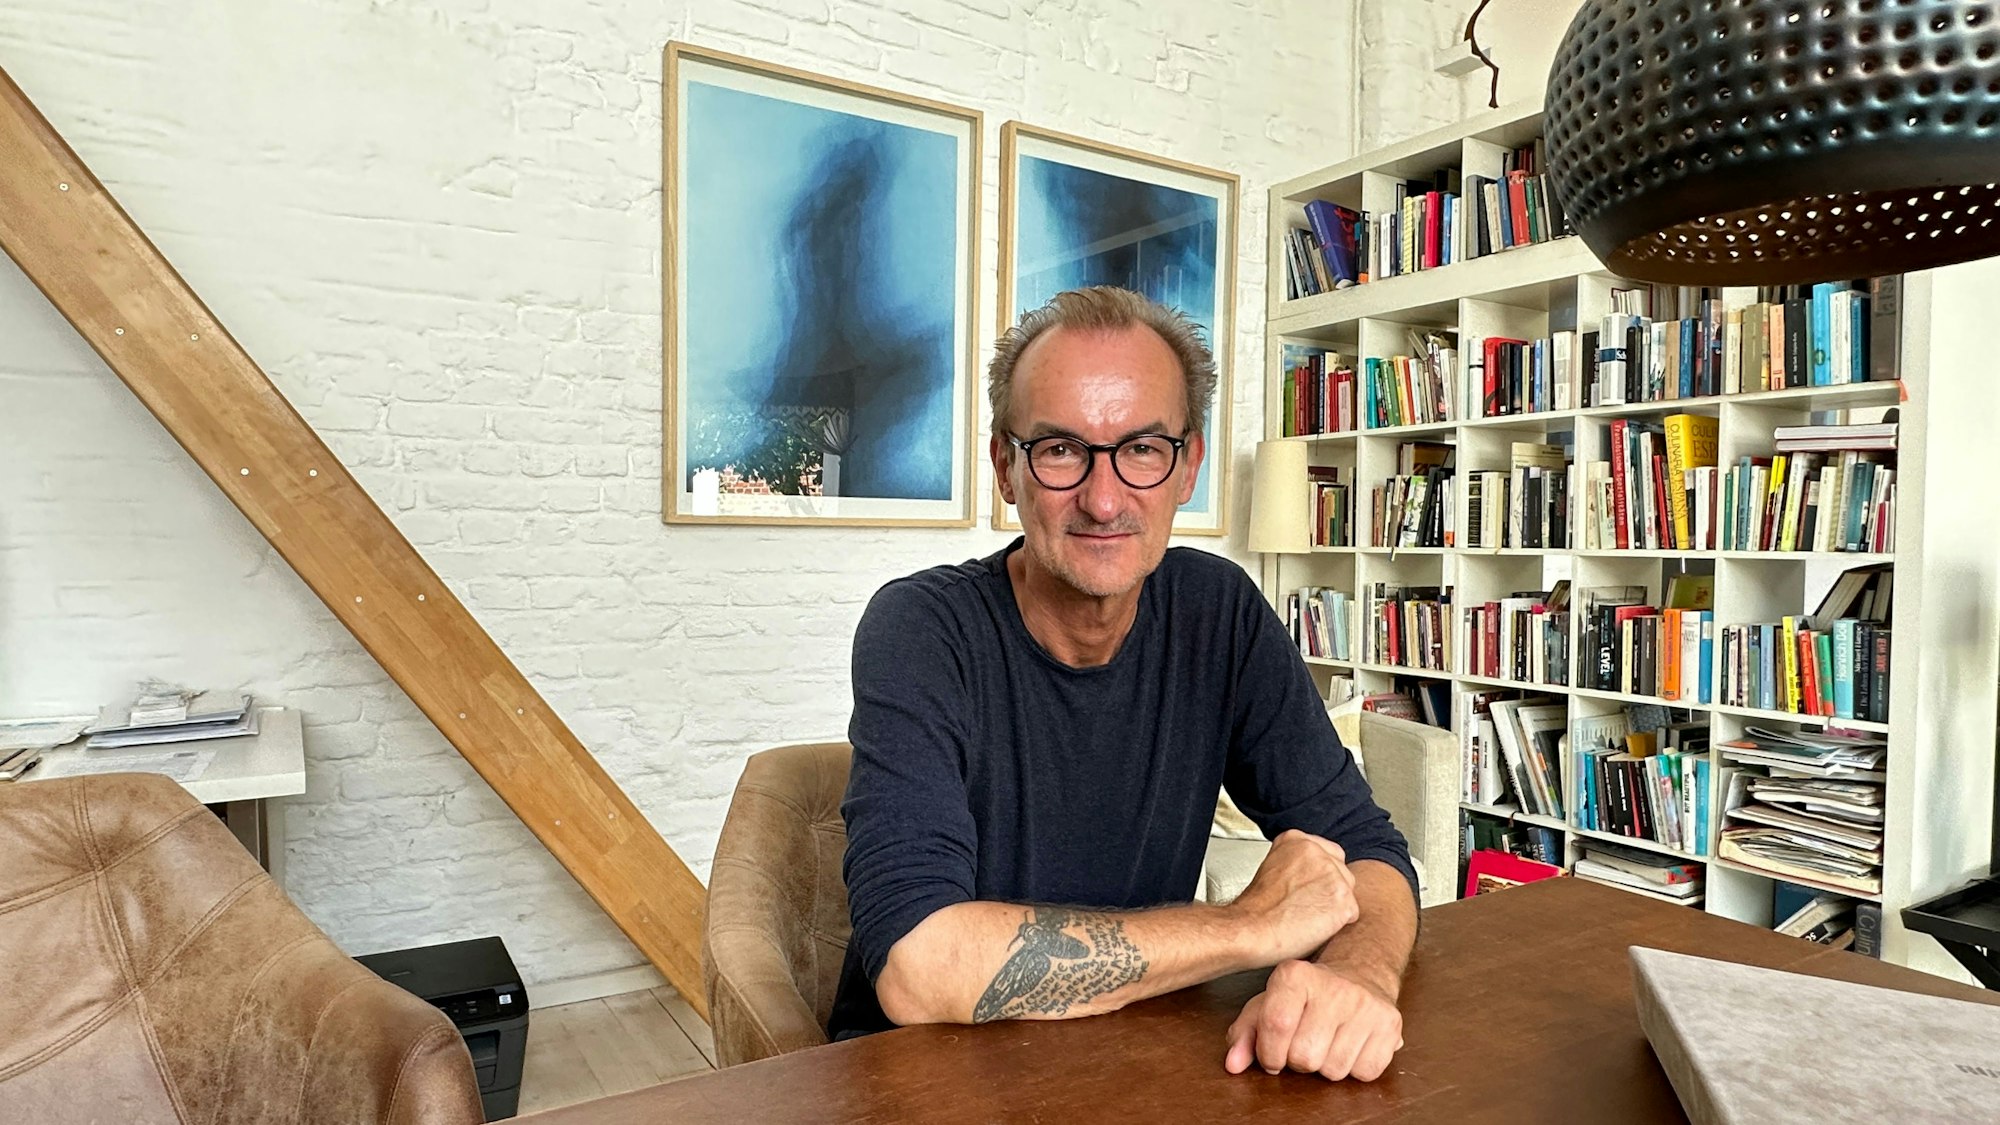 Ein Mann mit hoher Stirn, schwarzer Brille und im blauen Pullover sitzt an einem Tisch, im Hintergrund sind Bilder und ein Bücherregal zu sehen.